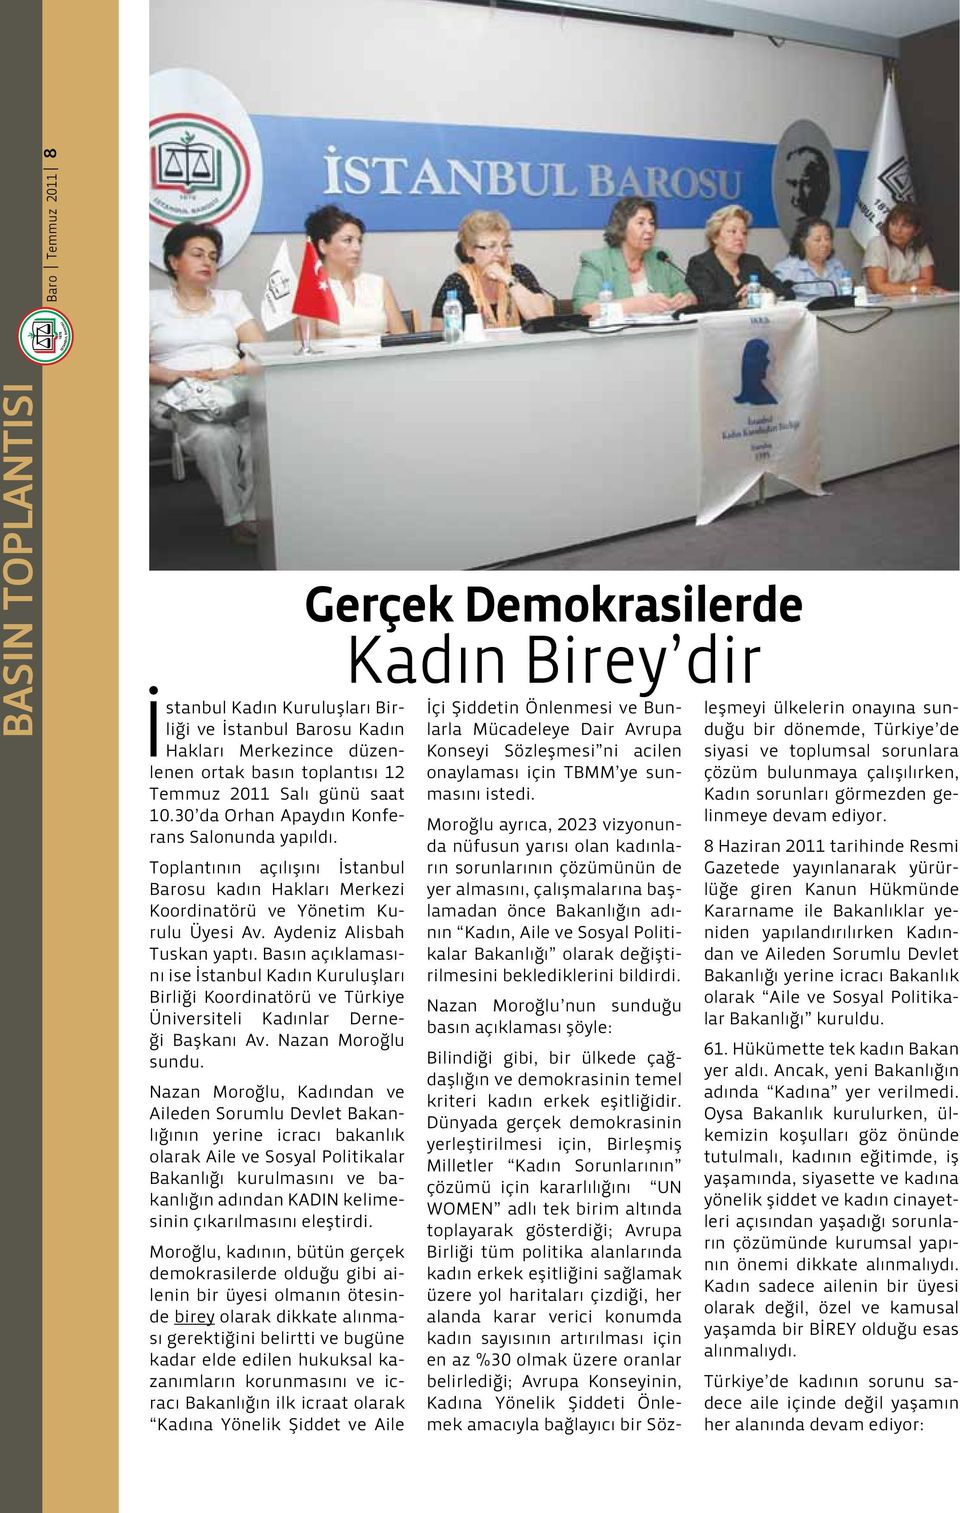 Basın açıklamasını ise İstanbul Kadın Kuruluşları Birliği Koordinatörü ve Türkiye Üniversiteli Kadınlar Derneği Başkanı Av. Nazan Moroğlu sundu.